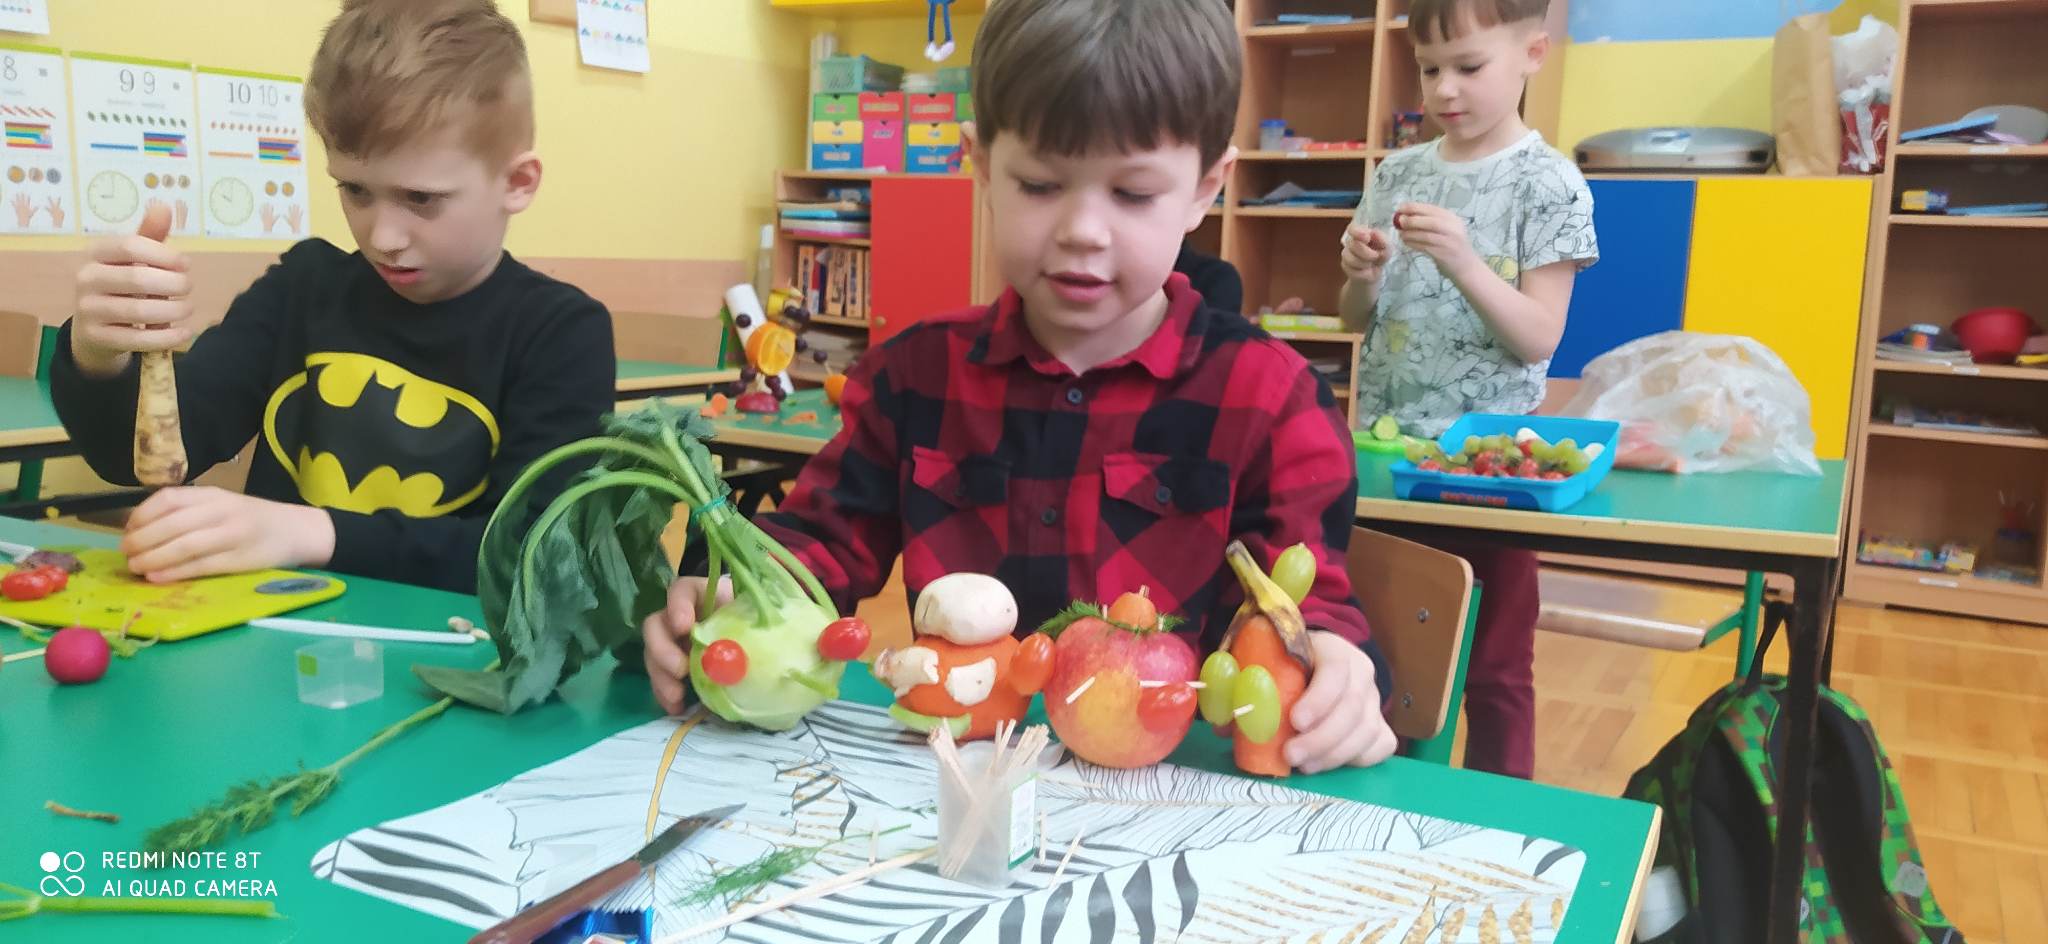 Dwaj chłopcy wykonują stworki z warzyw